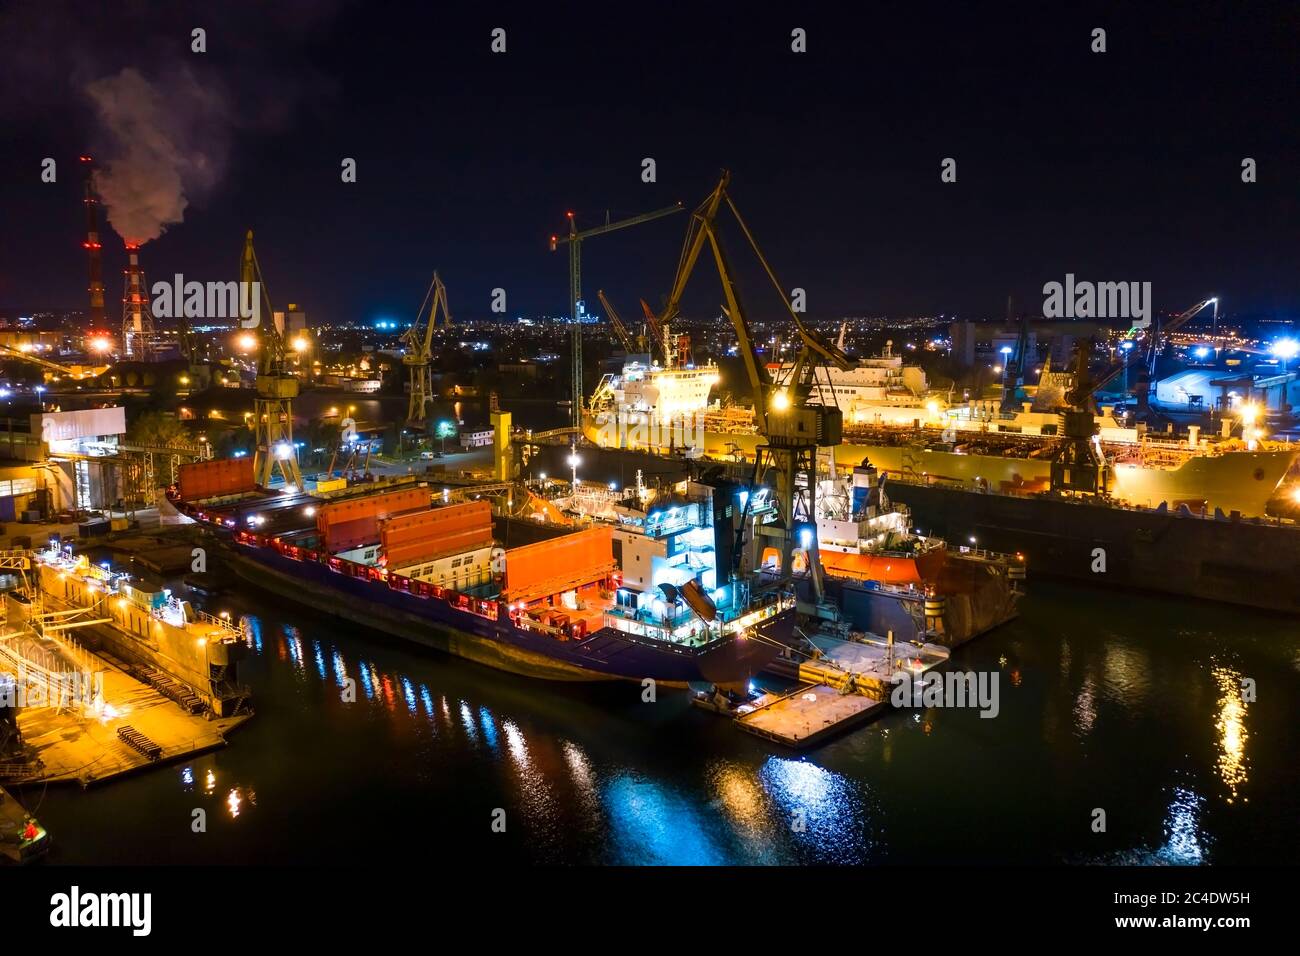 Les navires de nuit de drone Panorama dans des quais secs à Gdansk Pologne chantier naval Banque D'Images